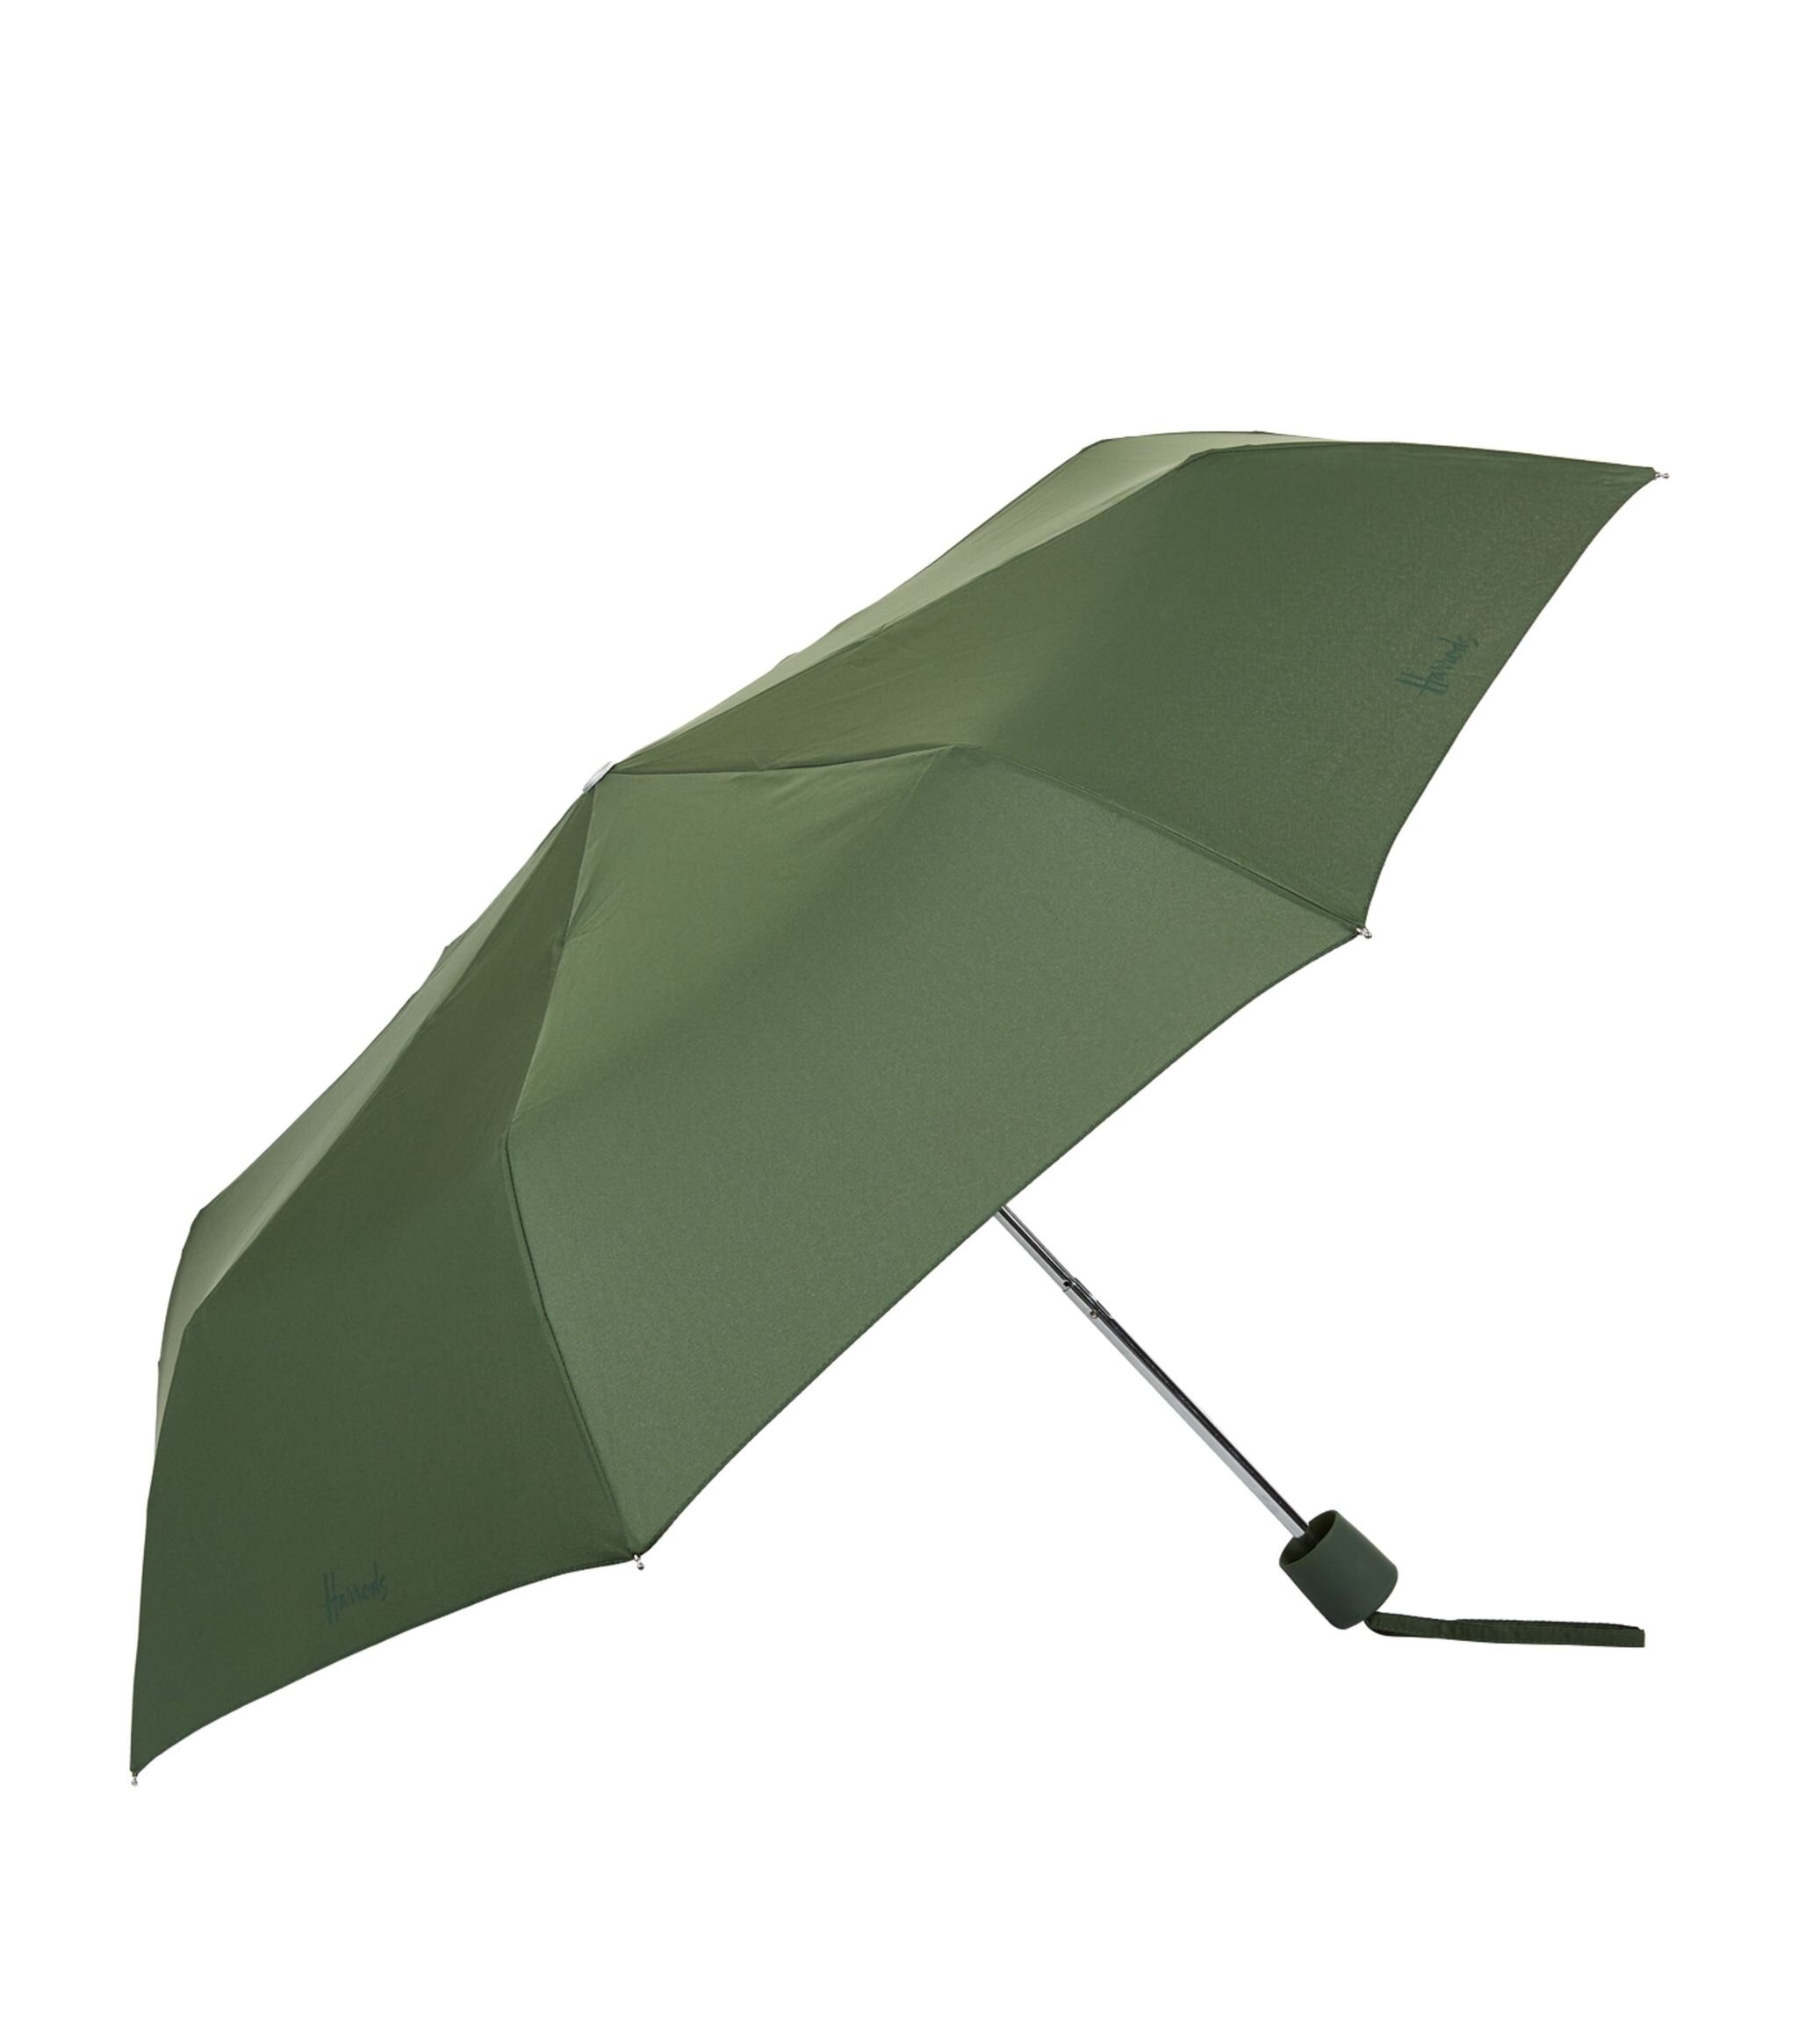 Harrods Logo Umbrella in Green.jpg